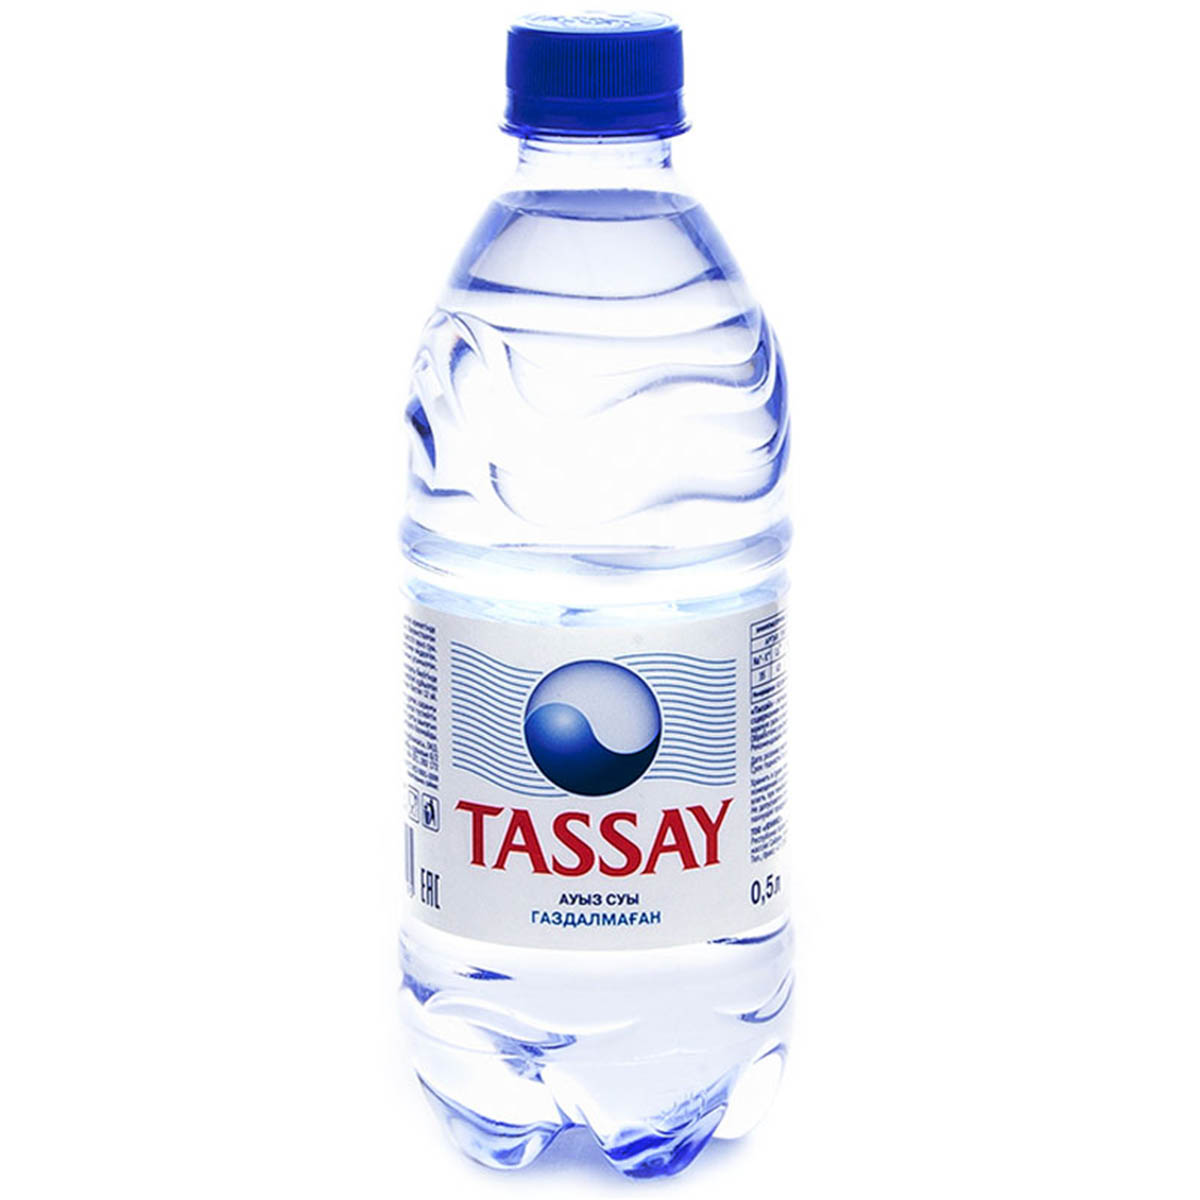 Вода питьевая негазированная 0.5. Tassay вода 0.5. Вода Tassay негазированная 5л. Вода 0.5 л негазированная. Казахская вода минеральная Tassay.